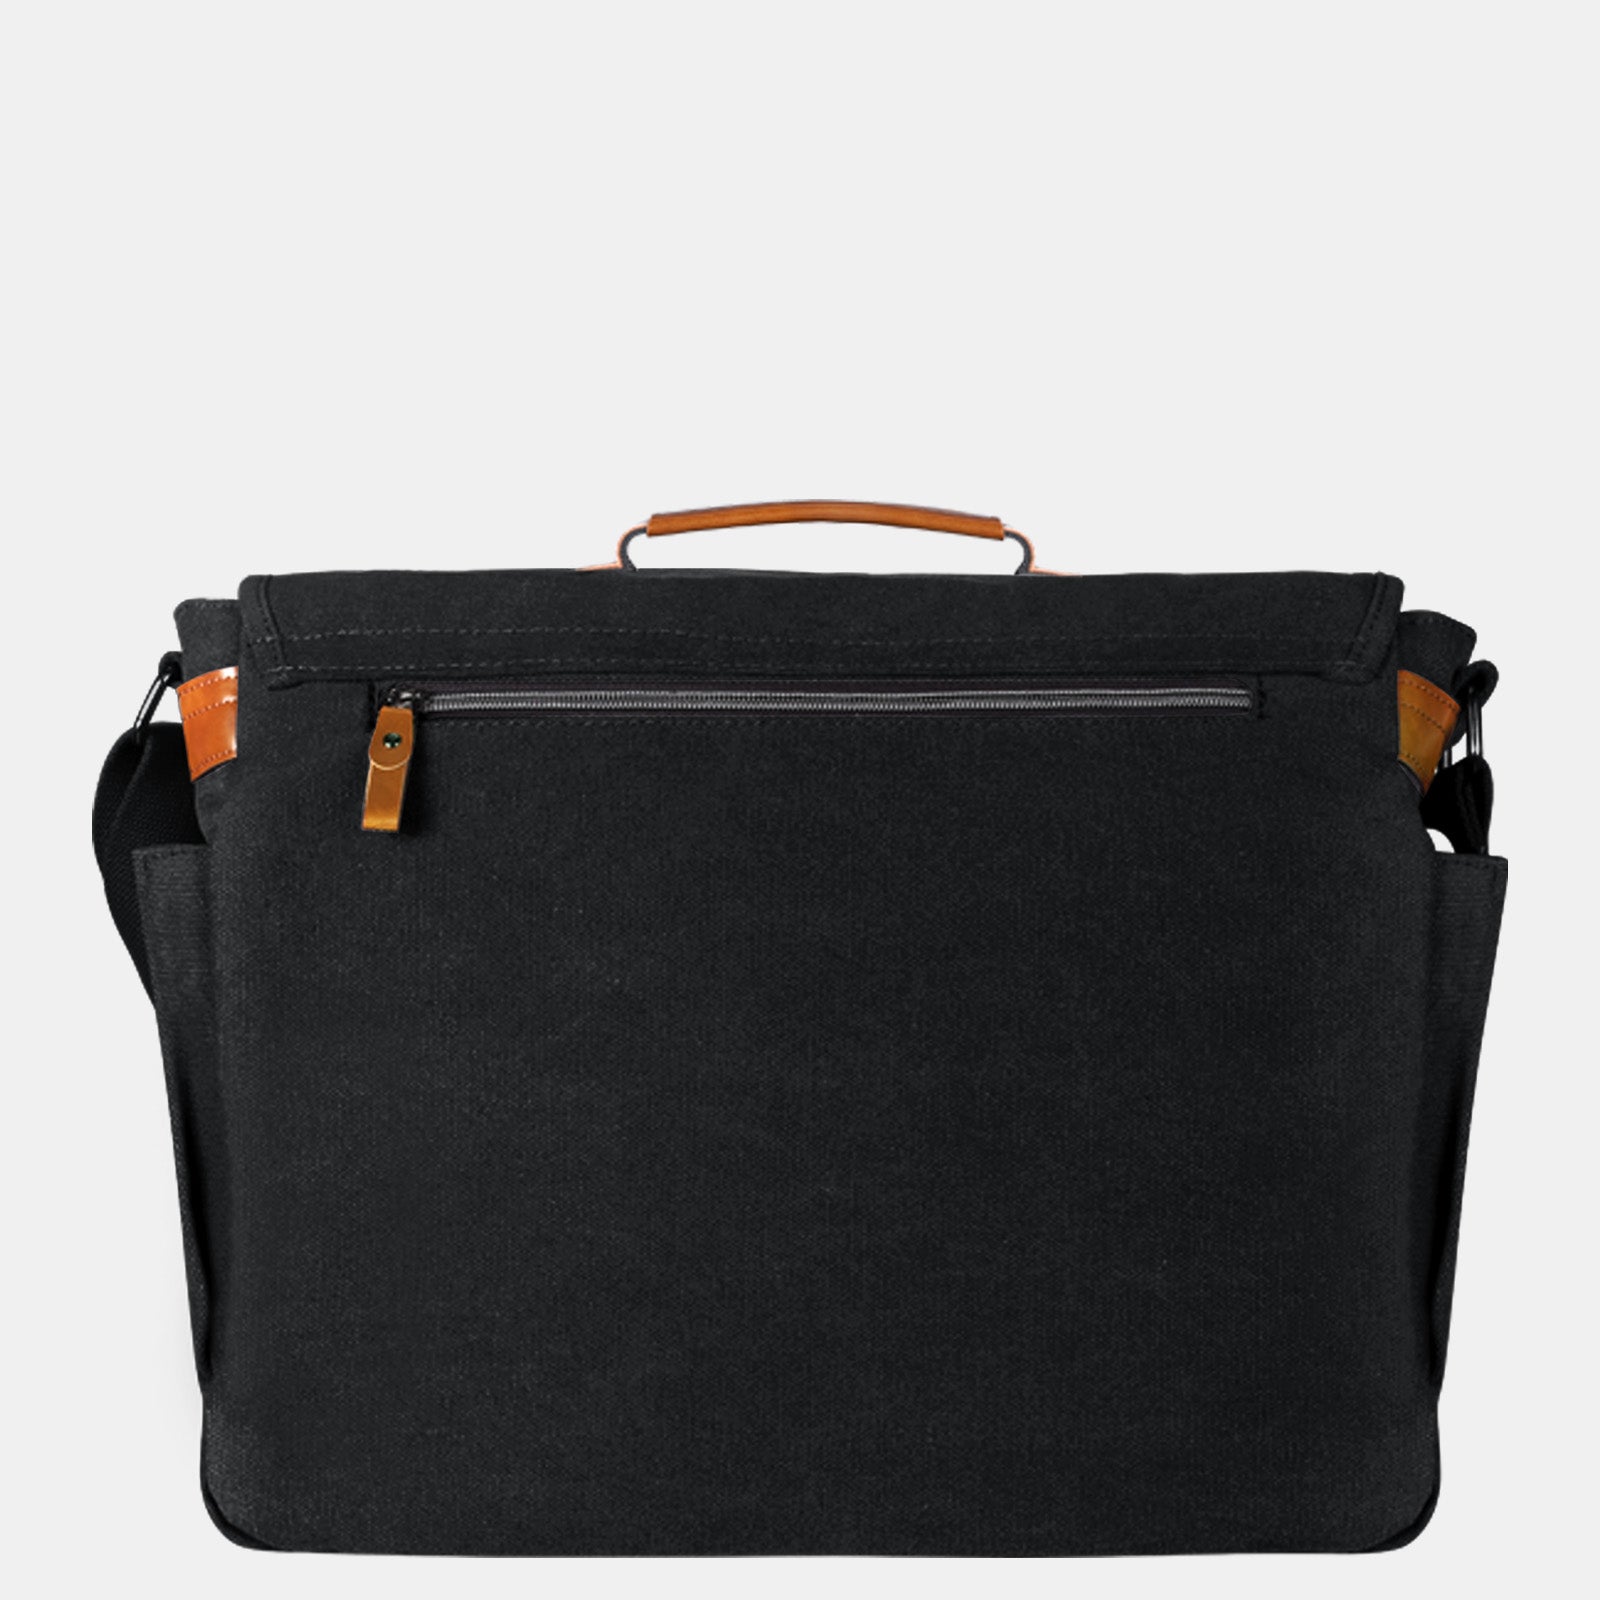 Estarer Large Laptop Messenger Bag Black